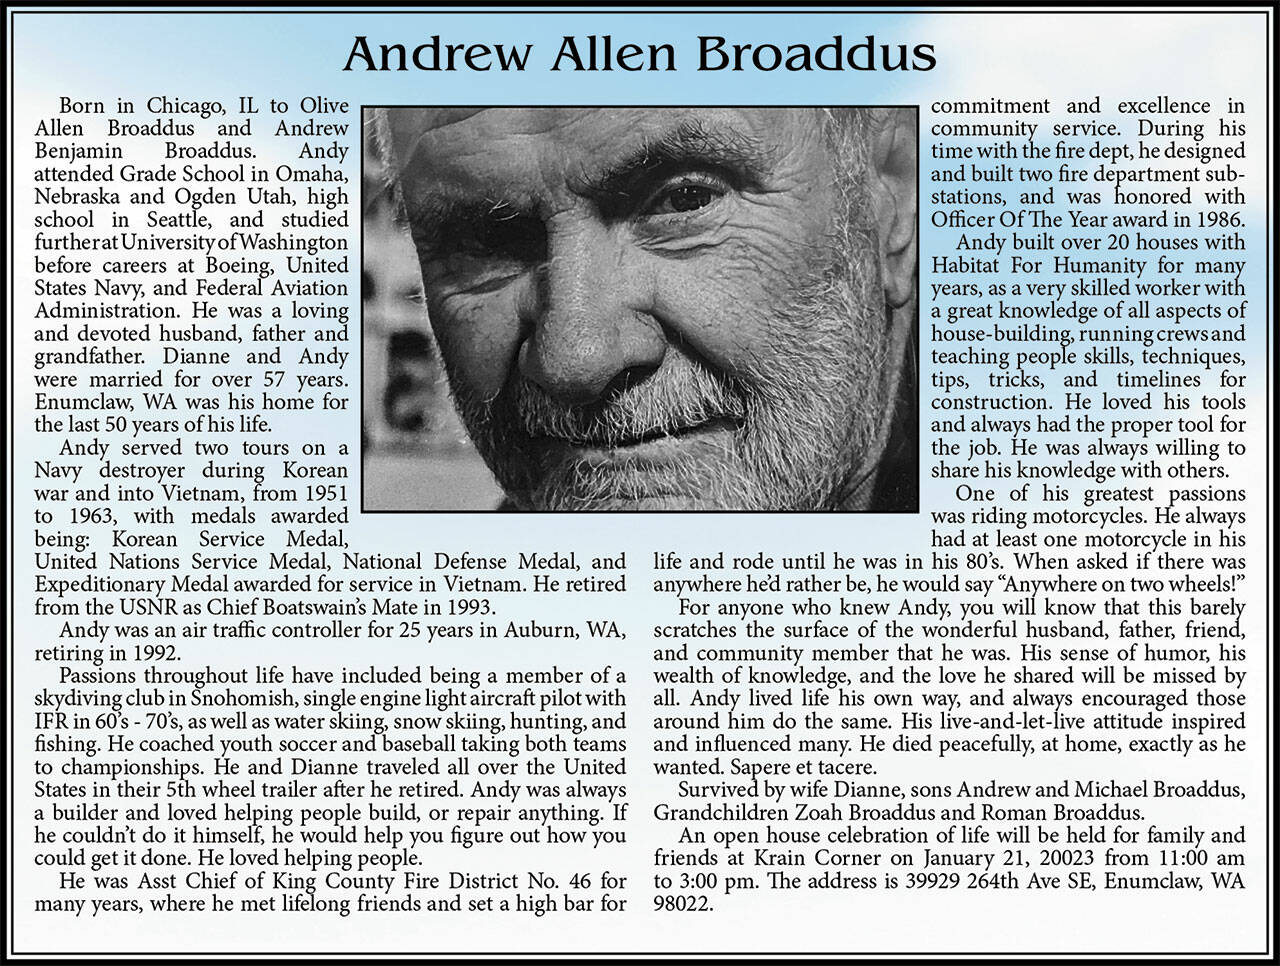 Andrew Broaddus